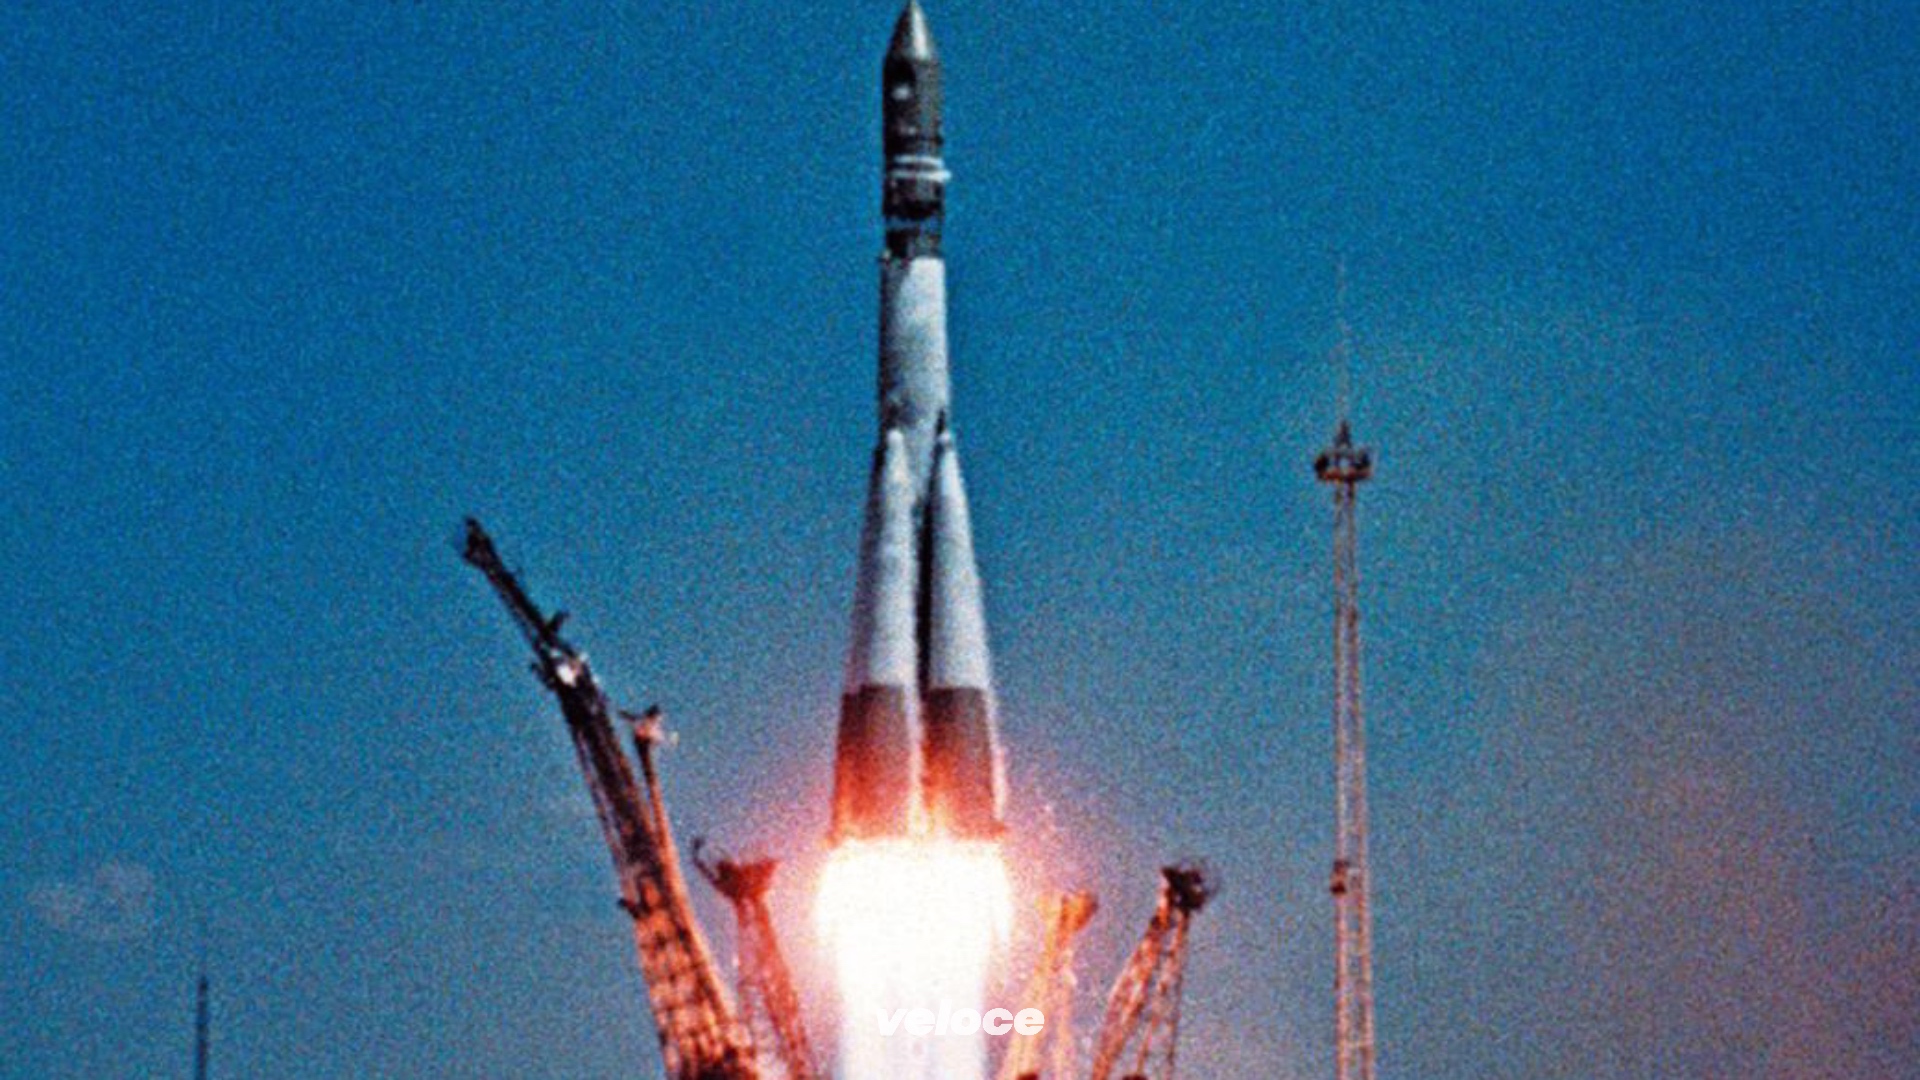 Какое название ракеты гагарина. Ракета Юрия Гагарина Восток-1. Байконур Восток 1 1961. Байконур Восток 1 Гагарин. Восток-1 космический корабль Гагарин.